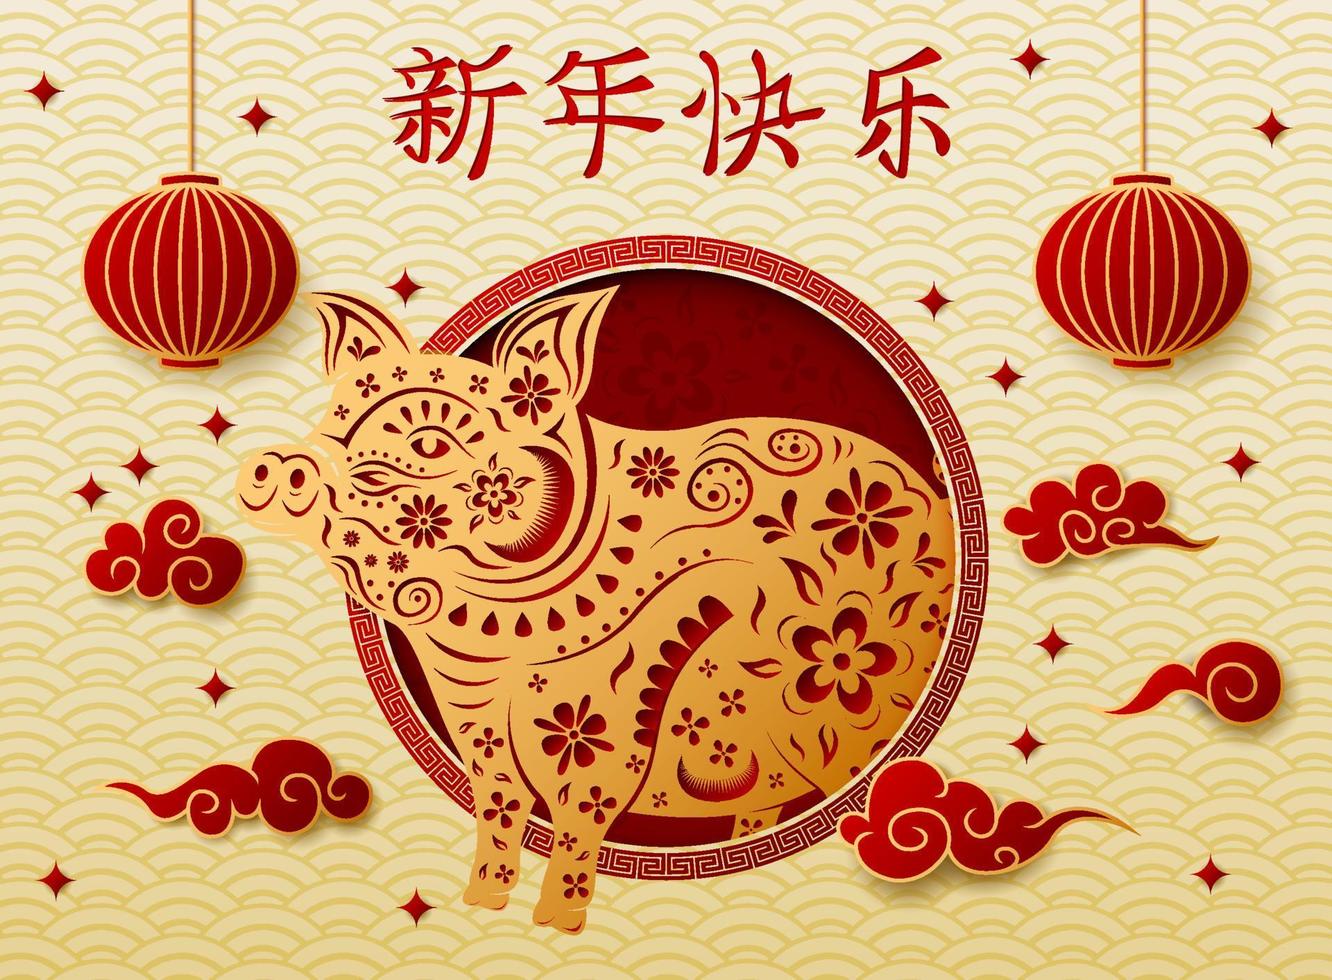 chinesisches neujahr mit hängendem schweintier und chinesischen laternen vektor